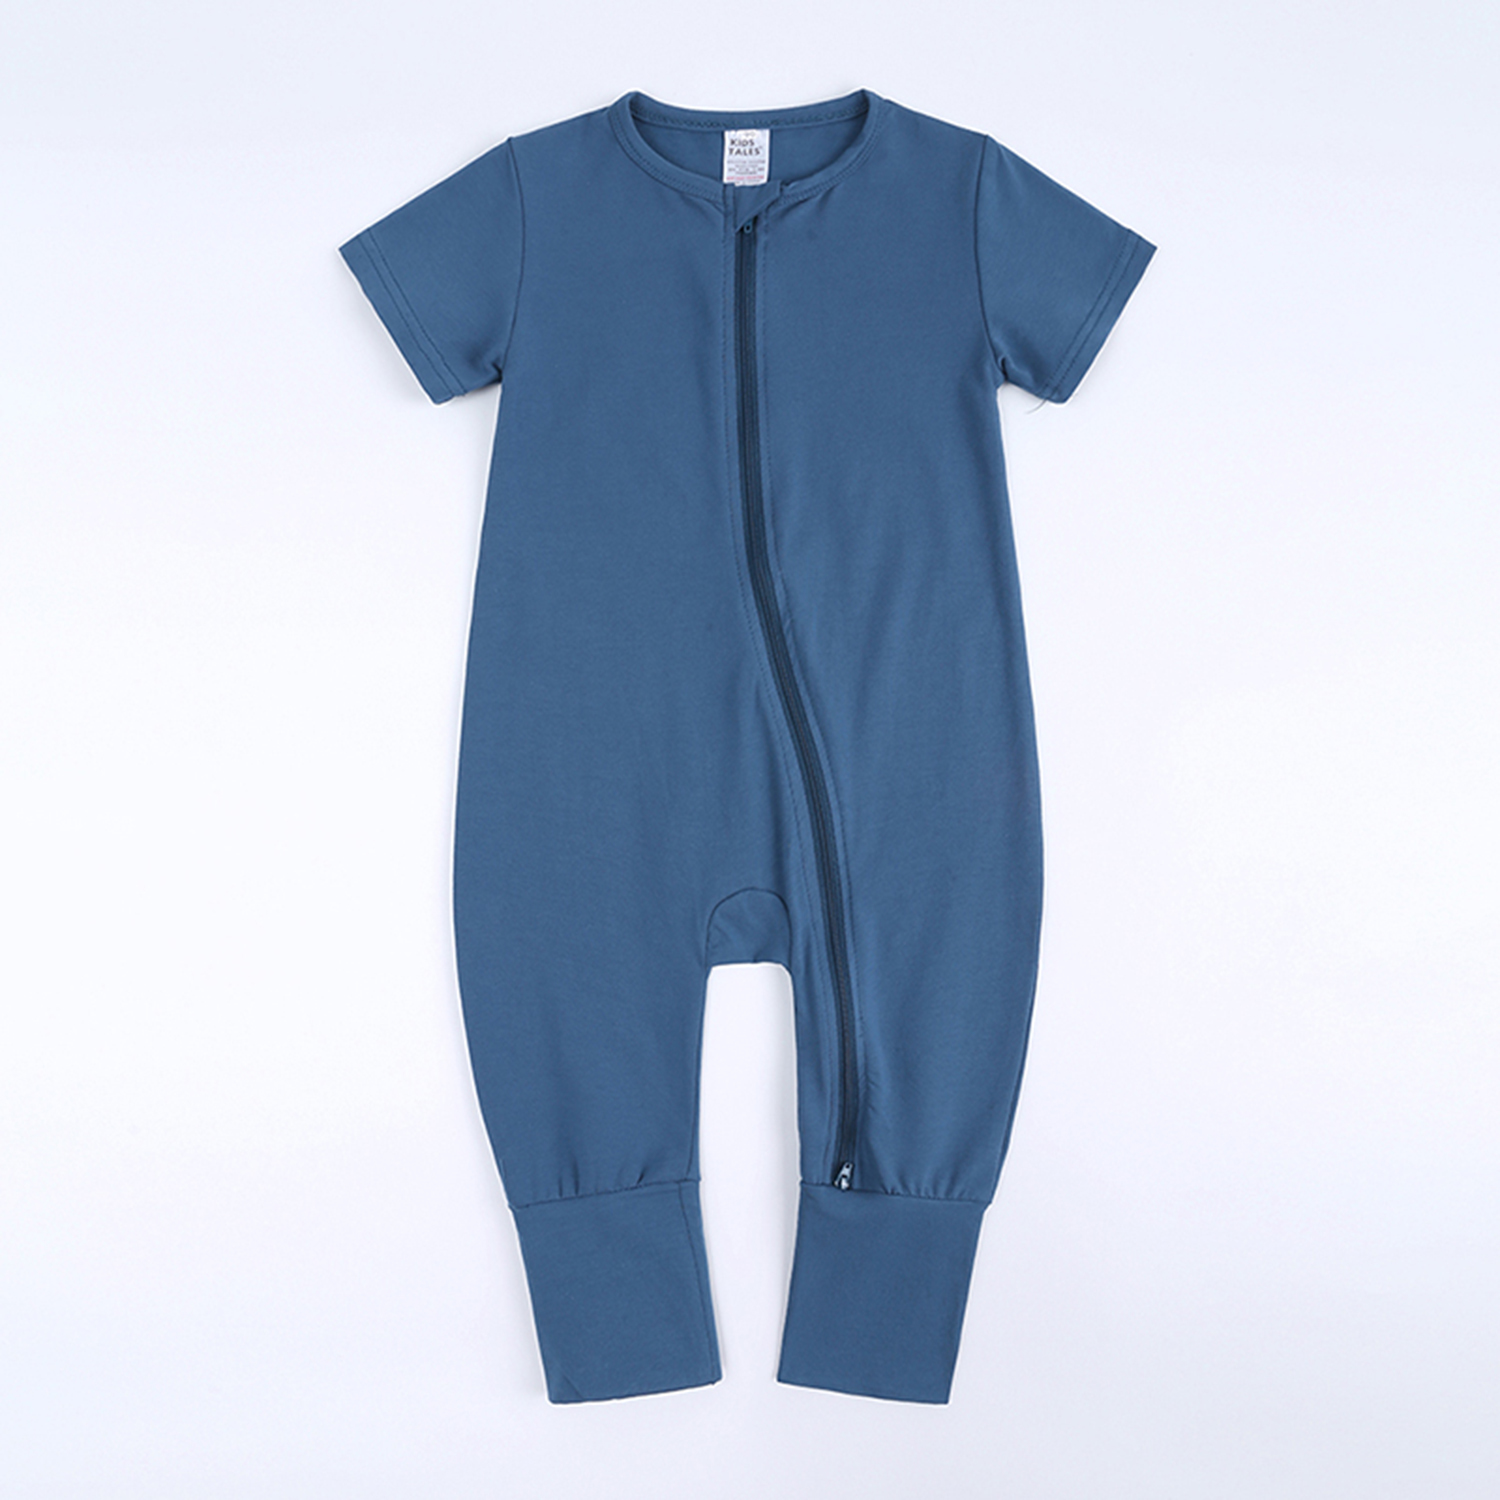 Kids Tales - Best baby romper blue 18-24 mo cotton double zipper infant bodysuit sleeper boy